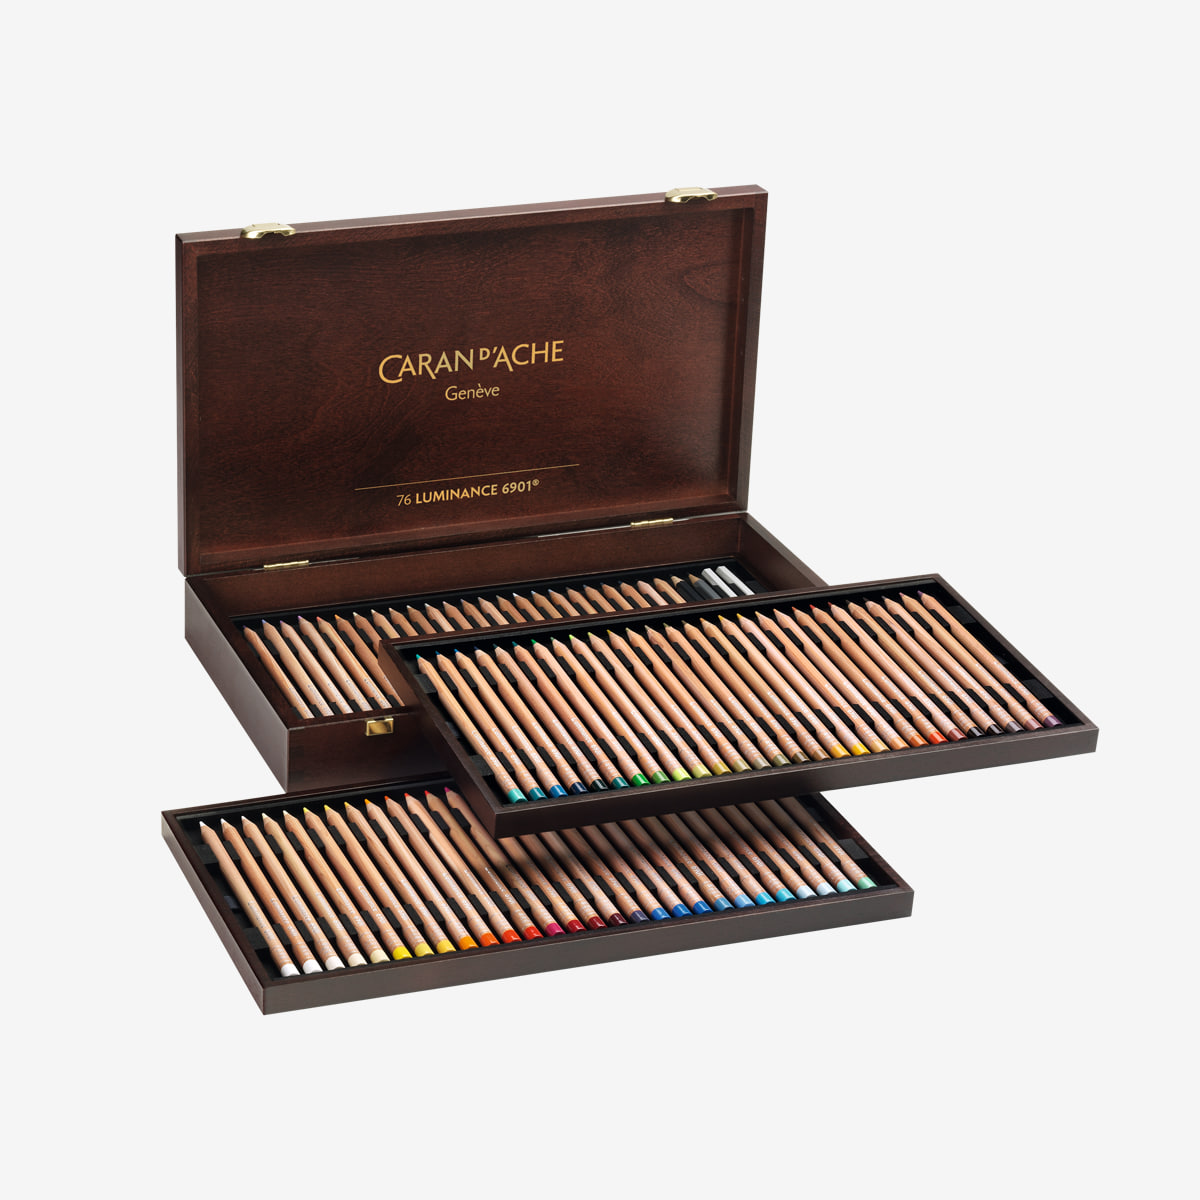 루미넌스 6901® 유성색연필 76색 Wooden Box